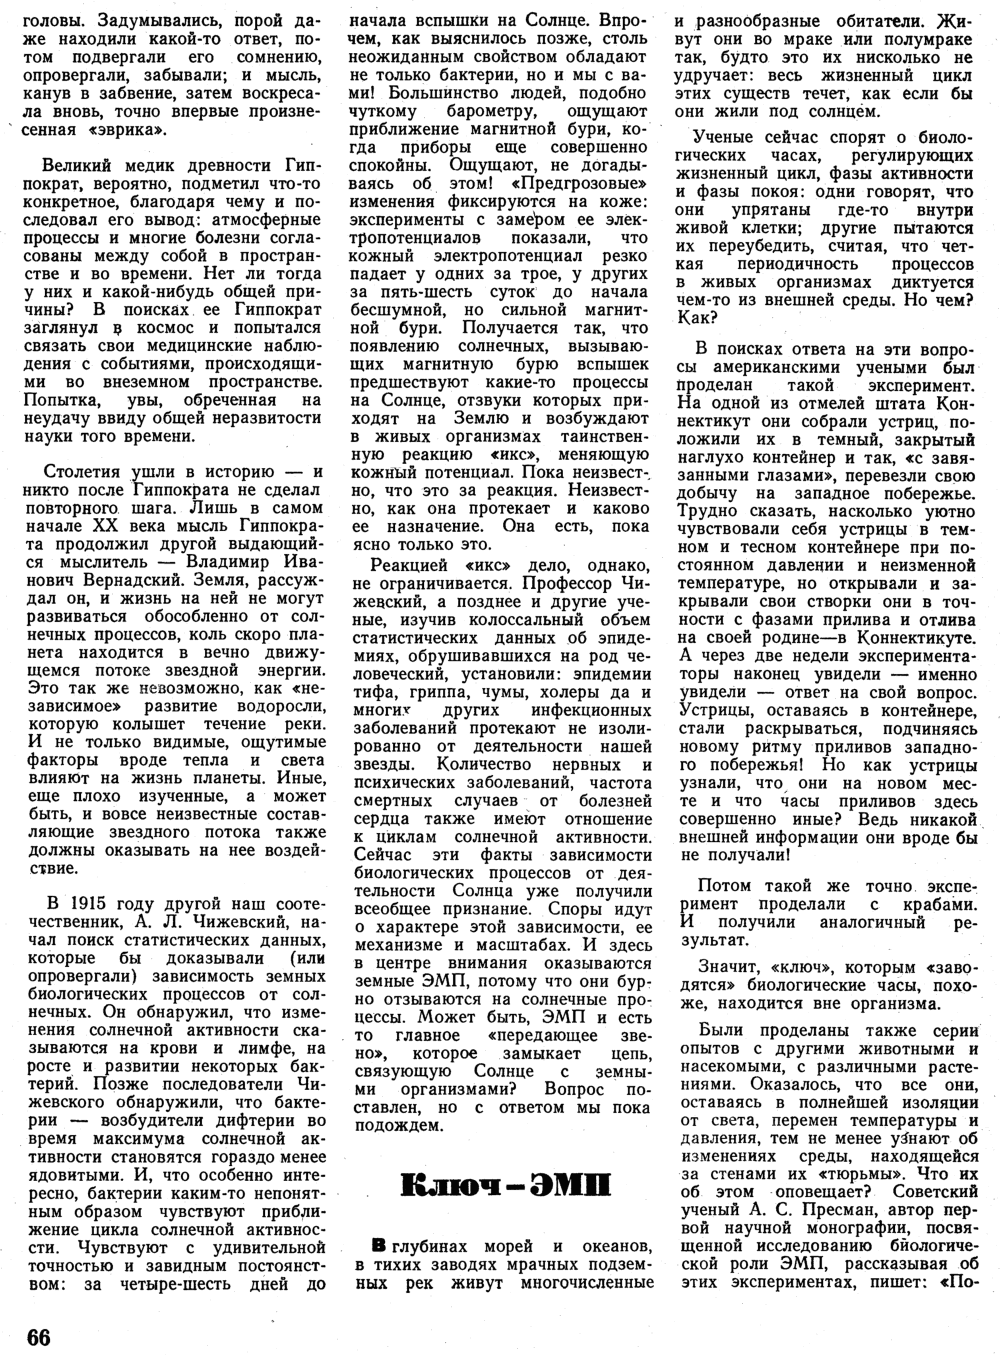 Миры ЭМП. Л. Репин. Вокруг света, 1970, №3, с.65-68. Фотокопия №2